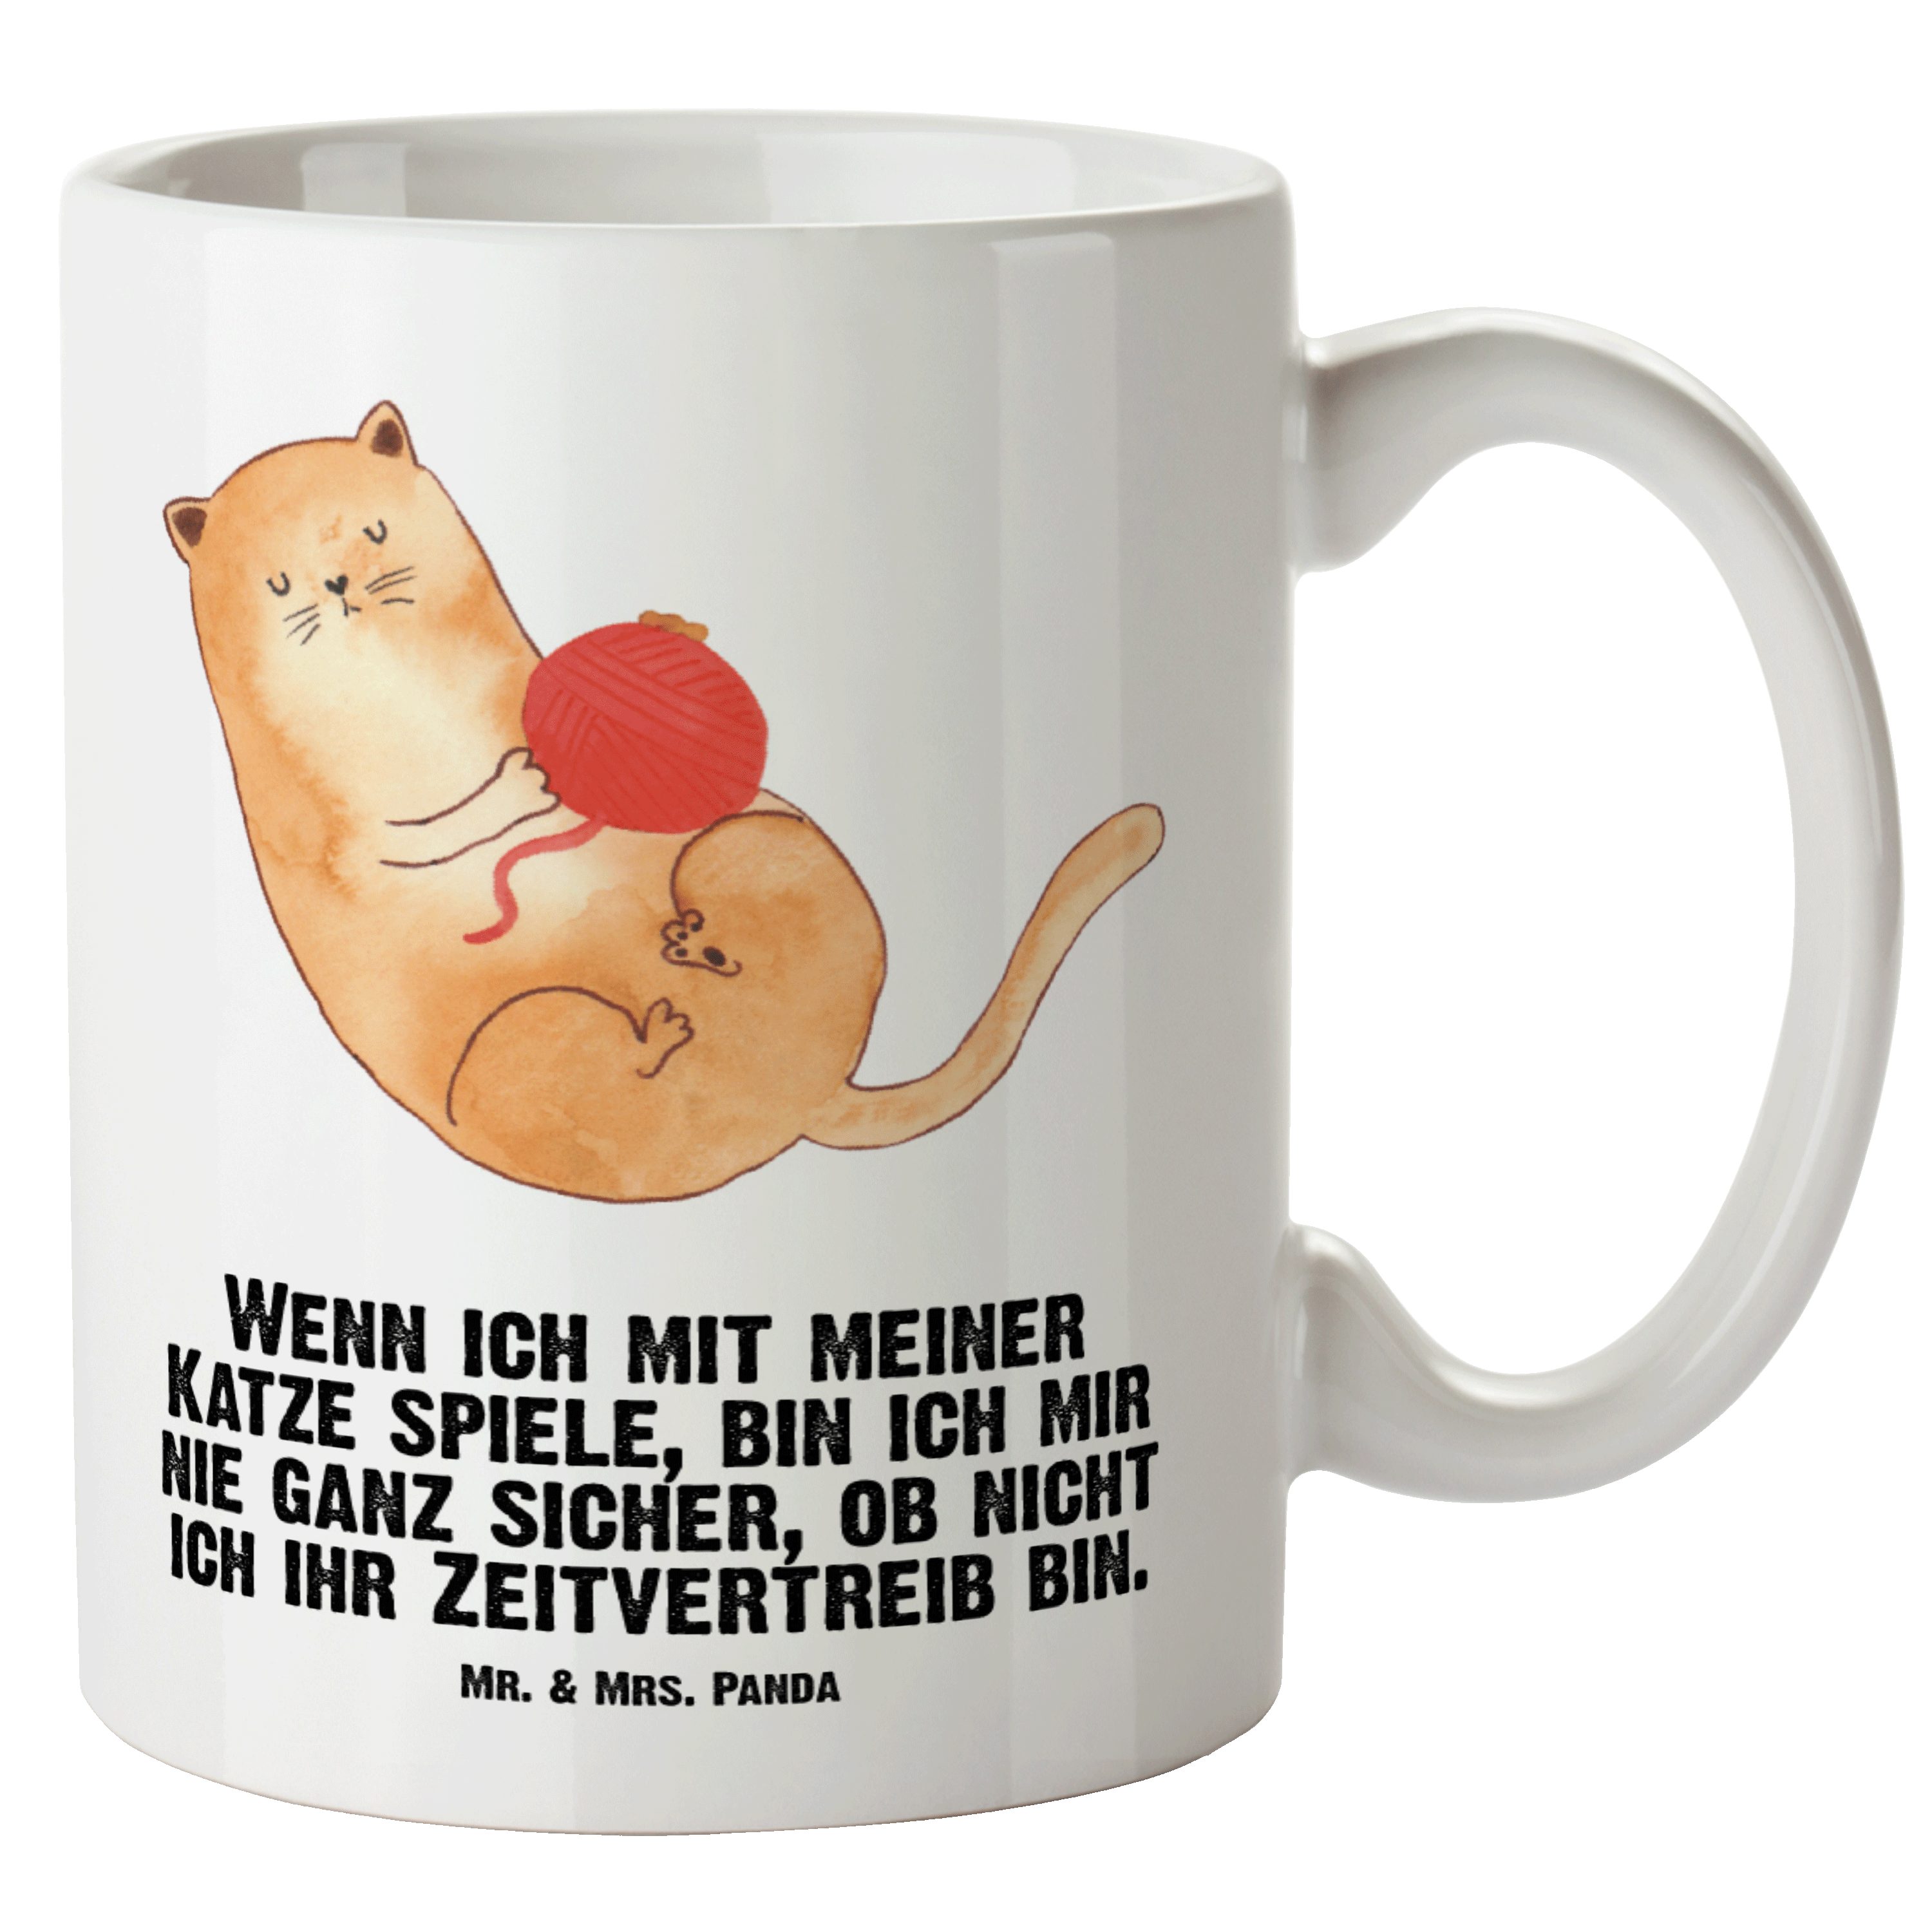 Mr. & Mrs. Panda Tasse Katzen Wollknäul - Weiß - Geschenk, Spiel, XL Tasse, Große Tasse, spü, XL Tasse Keramik